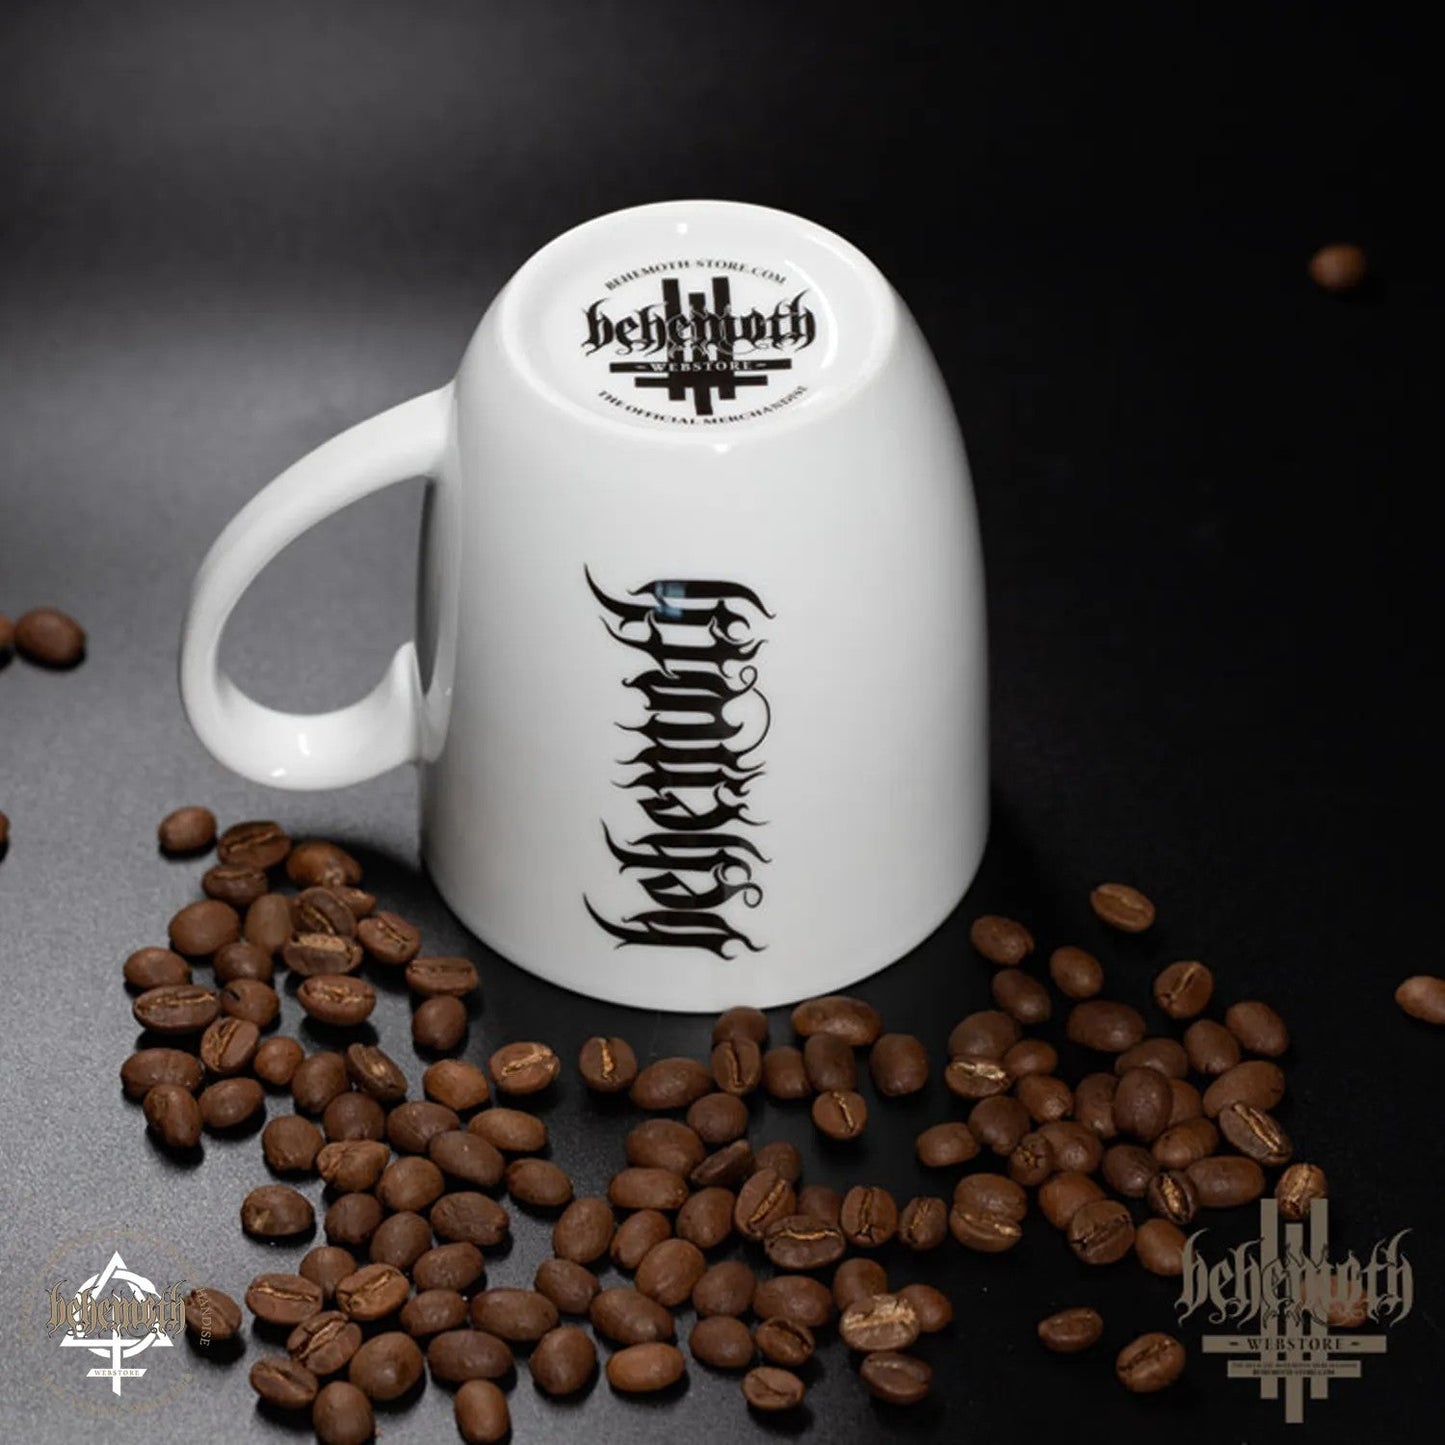 Behemoth 'Heretika' mug